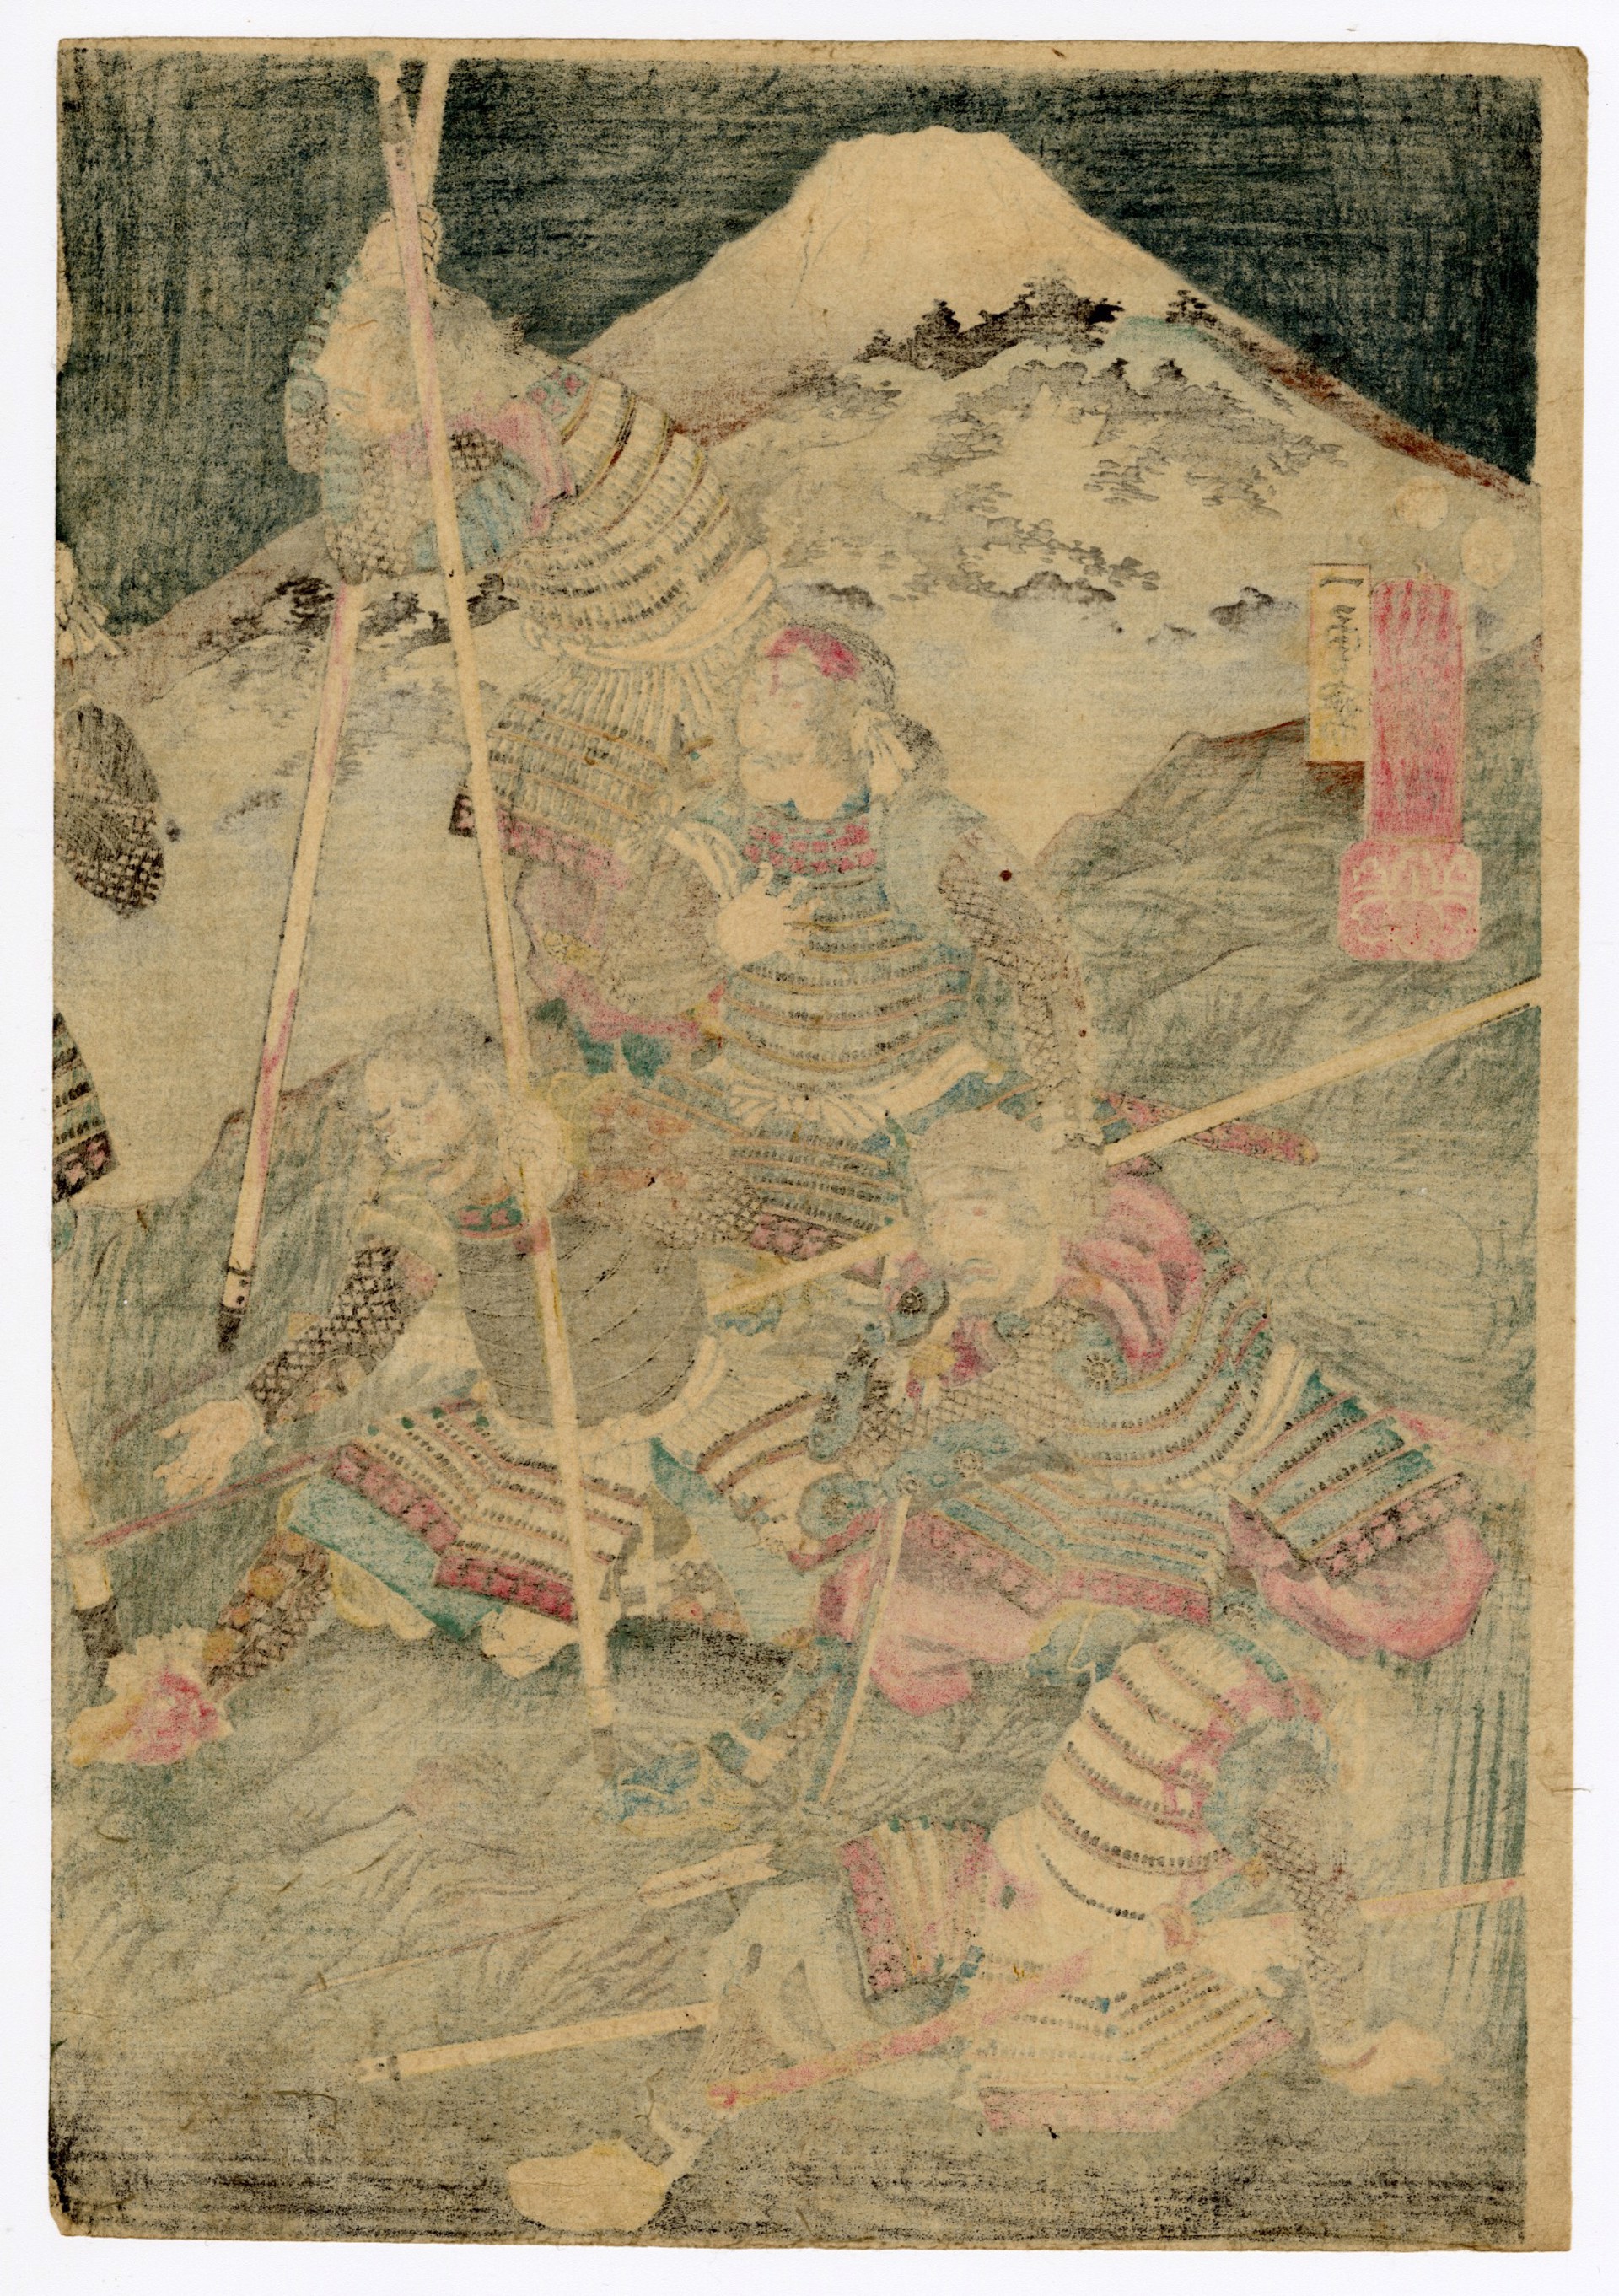 4th Year, 9th Monthof the Eiroku Era, Battle of Kawanakajima by Kuniyoshi